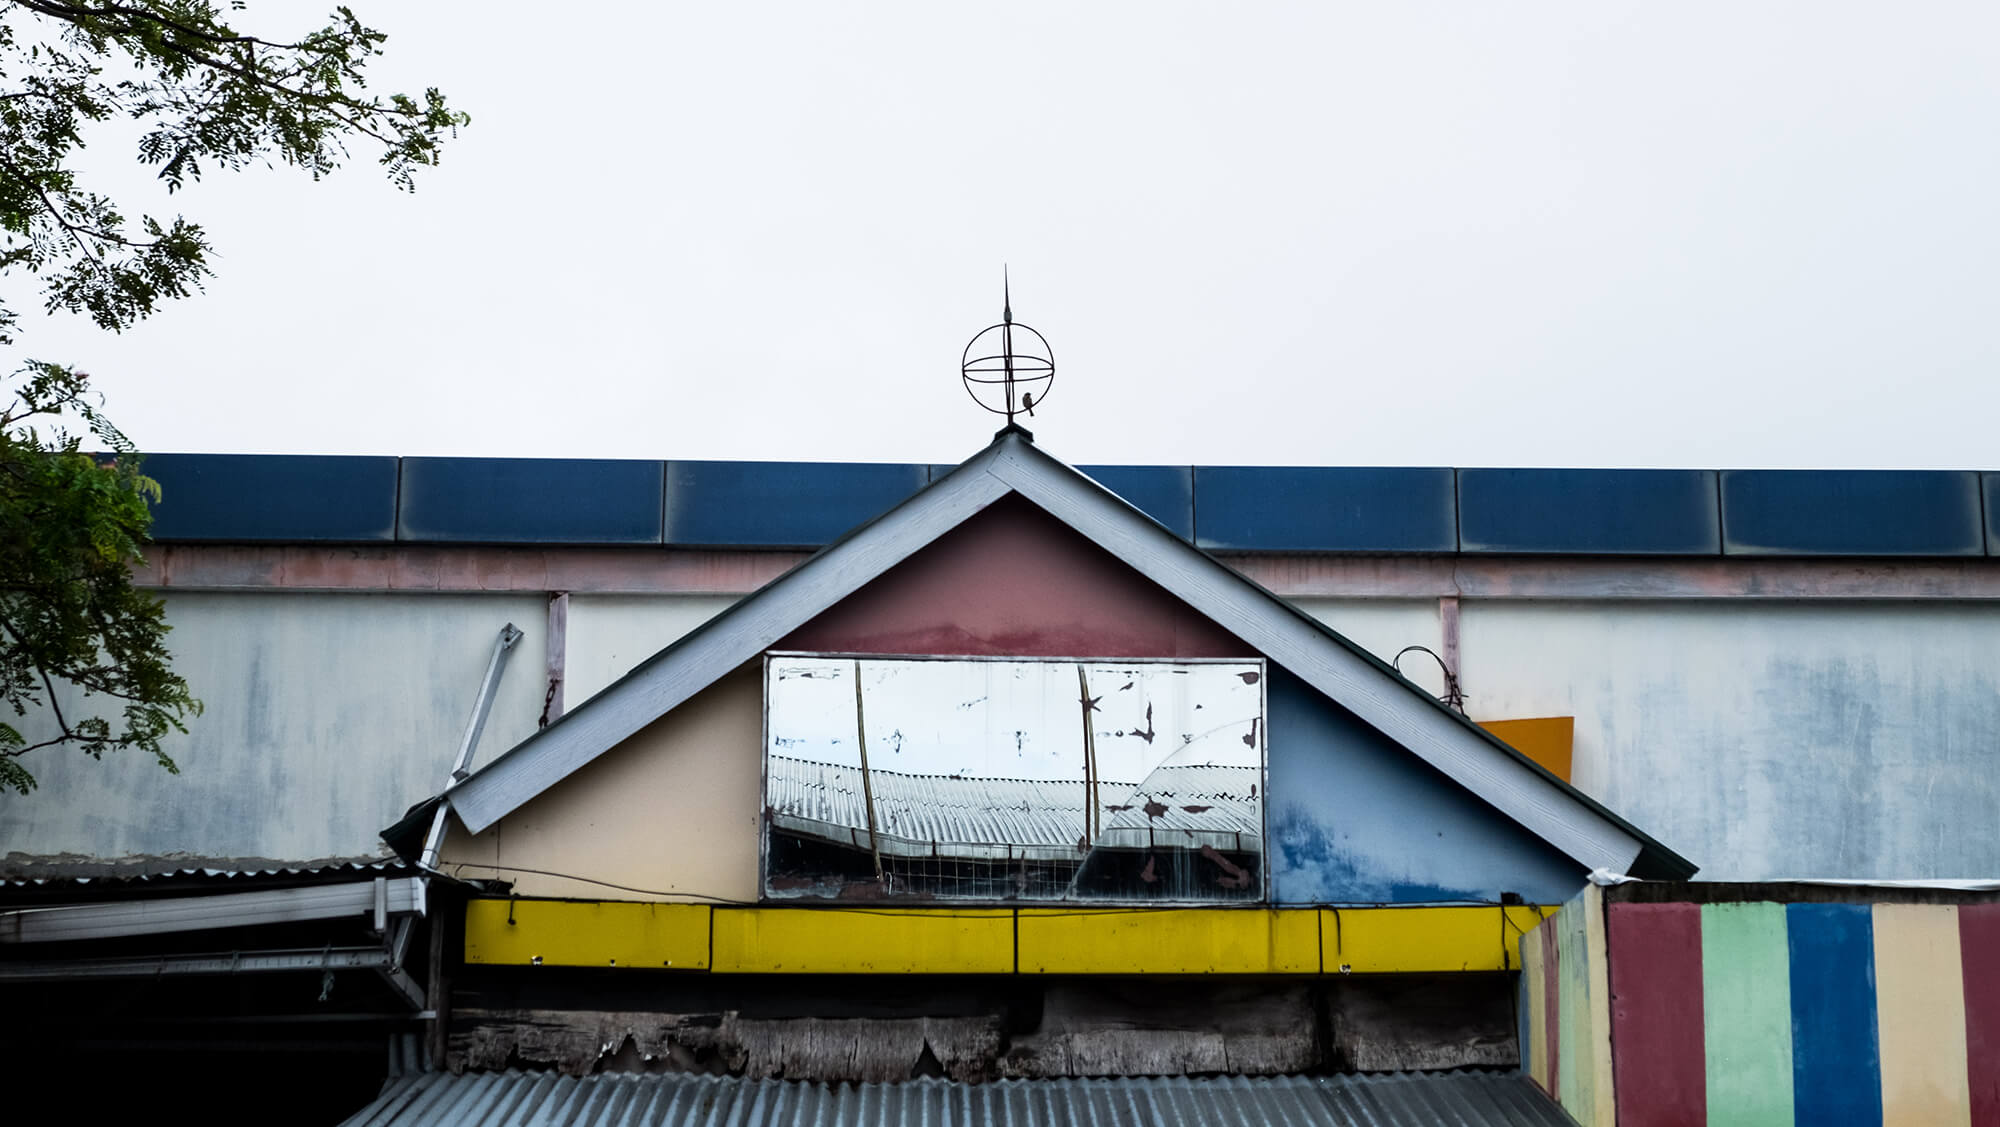 Arquitectura pintoresca en la ciudad de Manado en Sulawesi